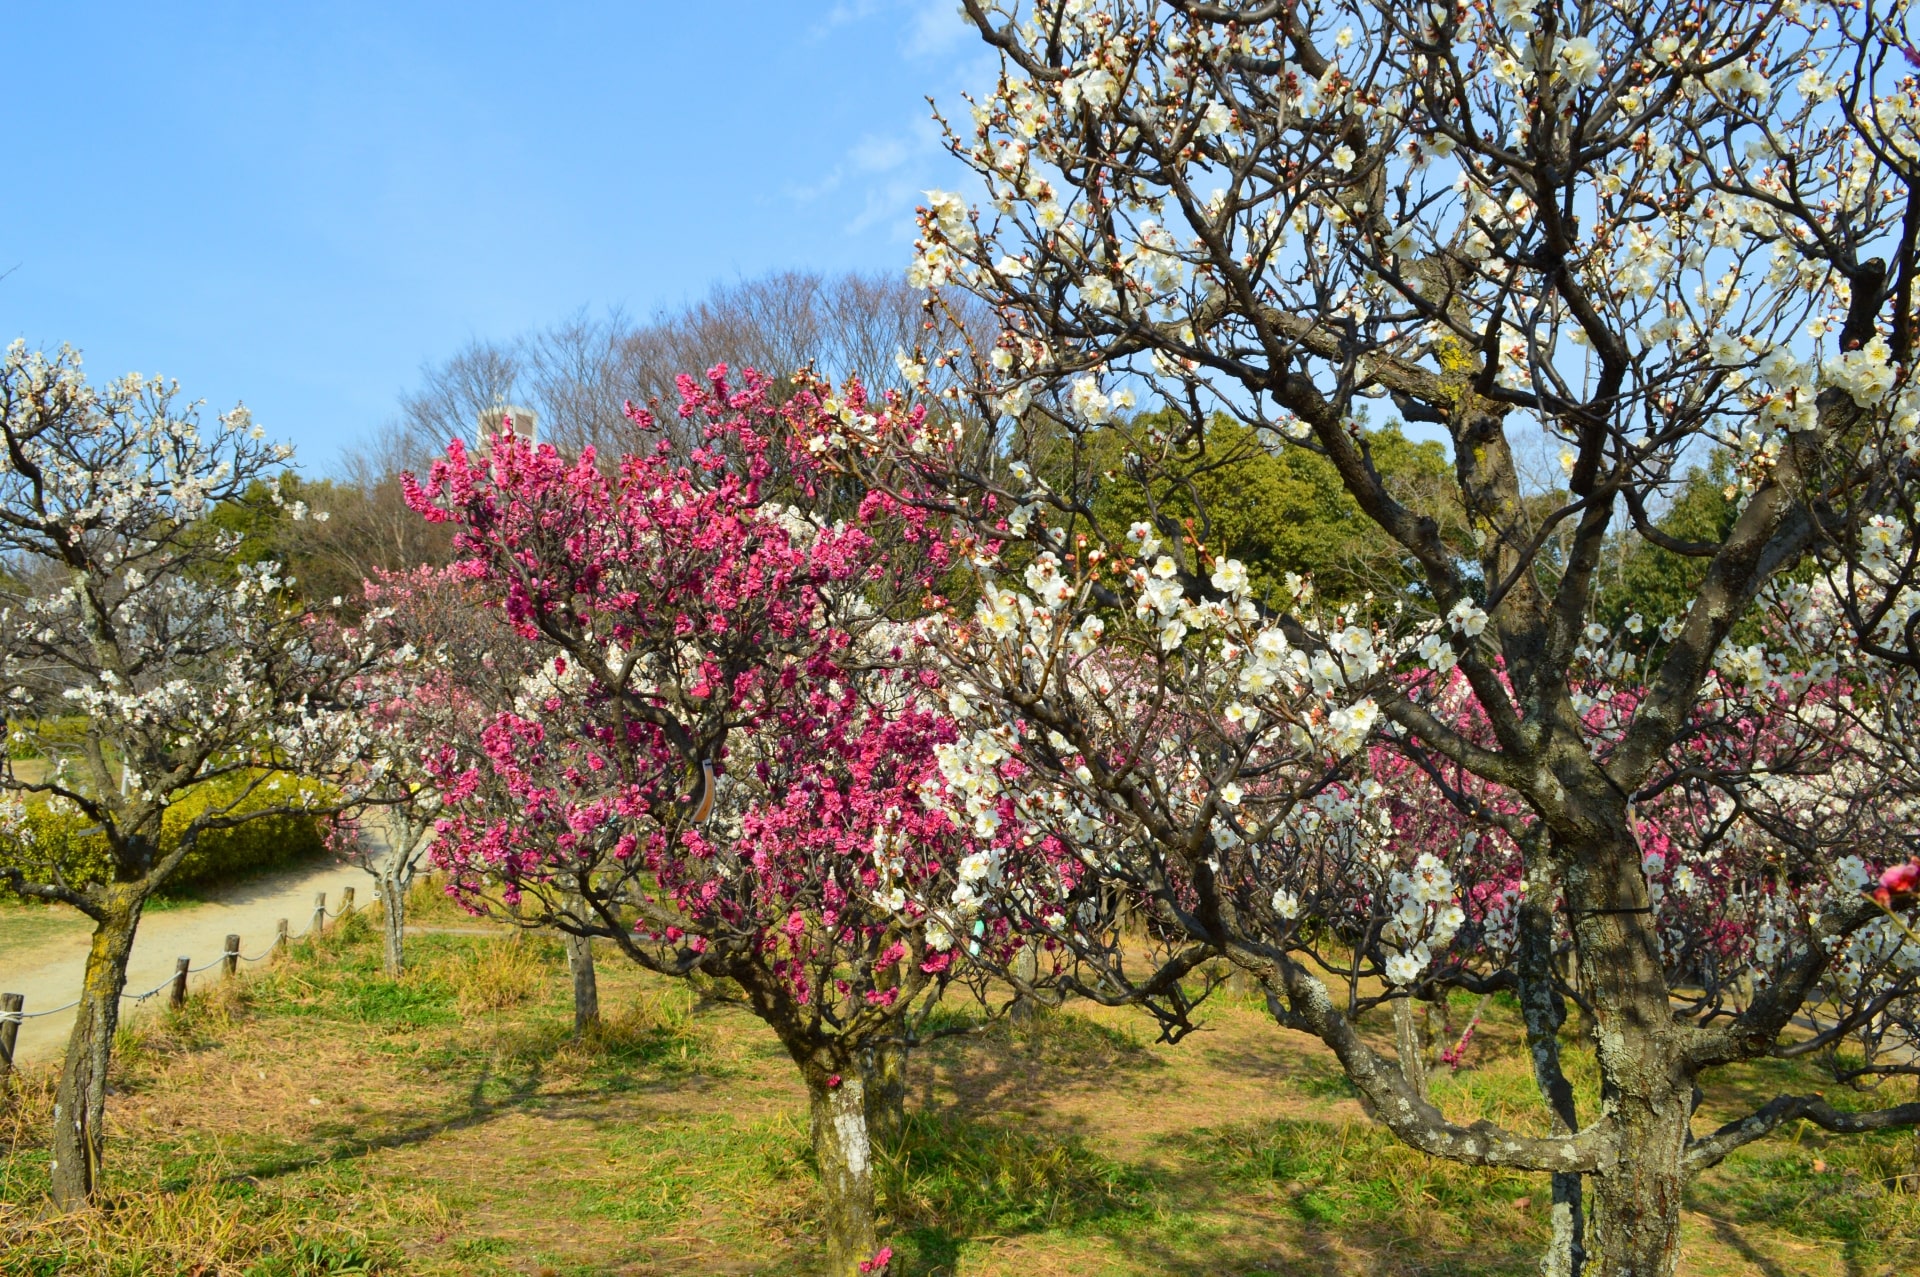 The pulm trees in Umekoji Park